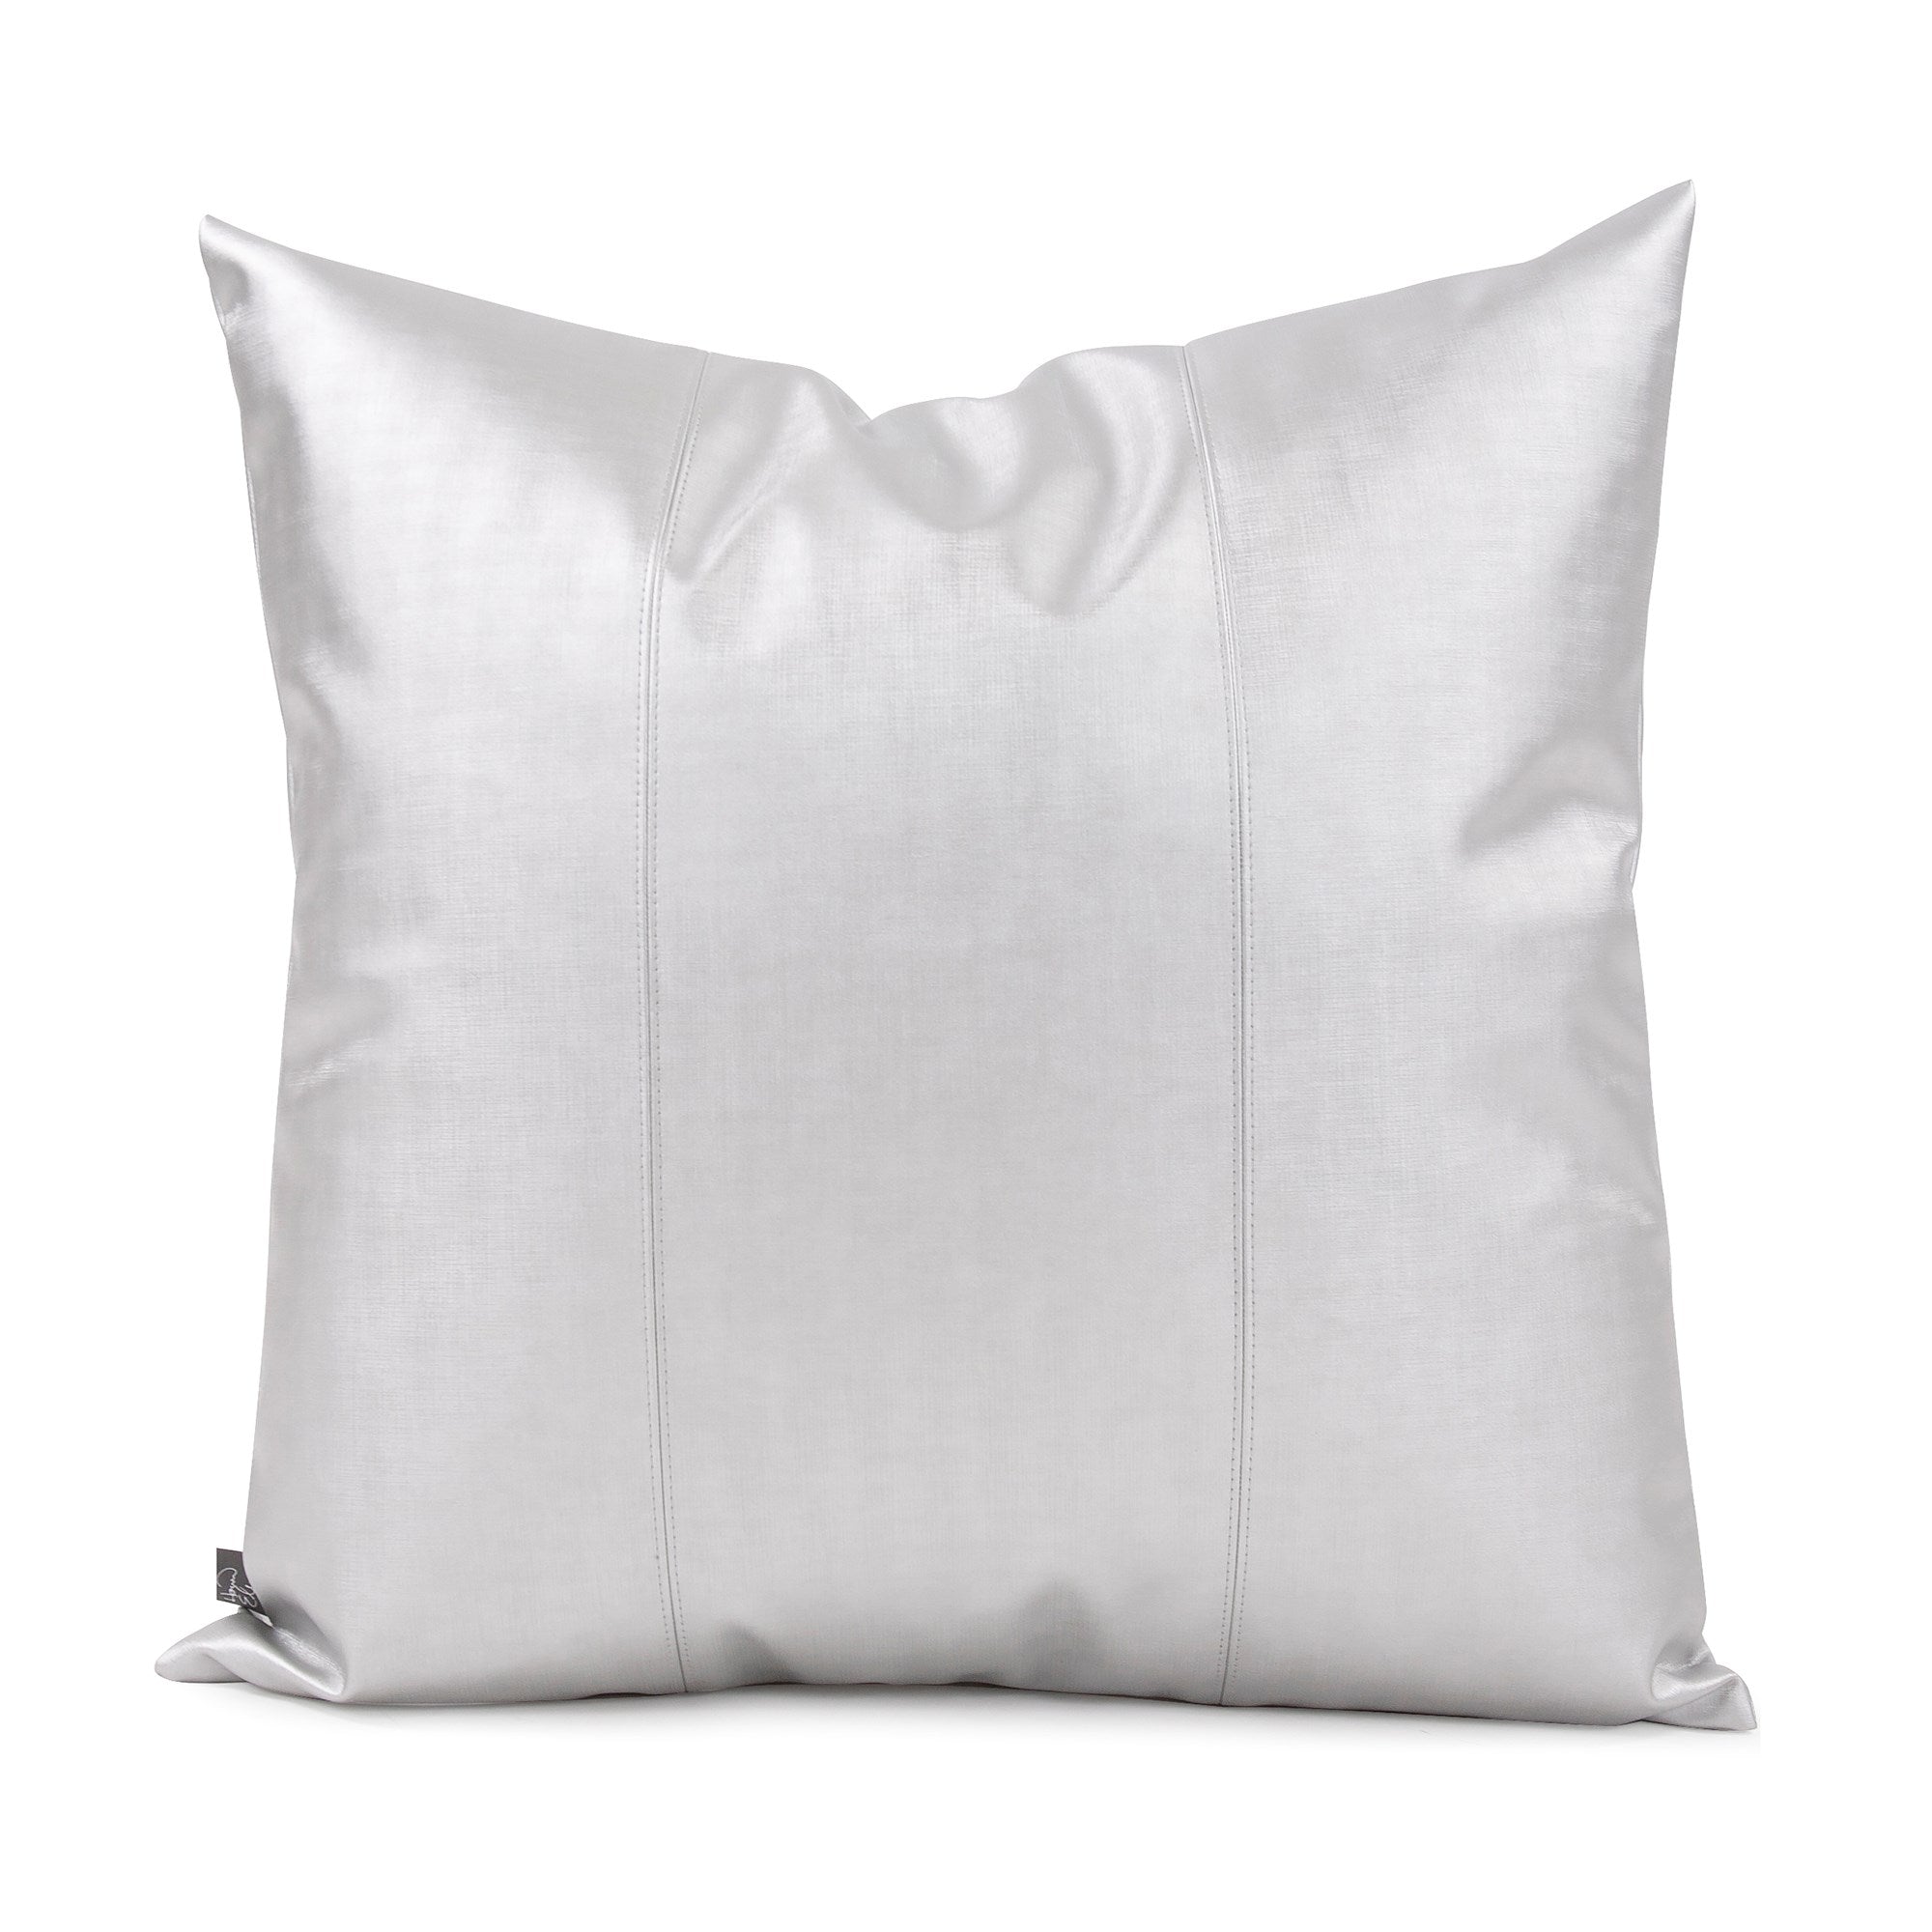 Luxe Mercury Pillow- 24" x 24"